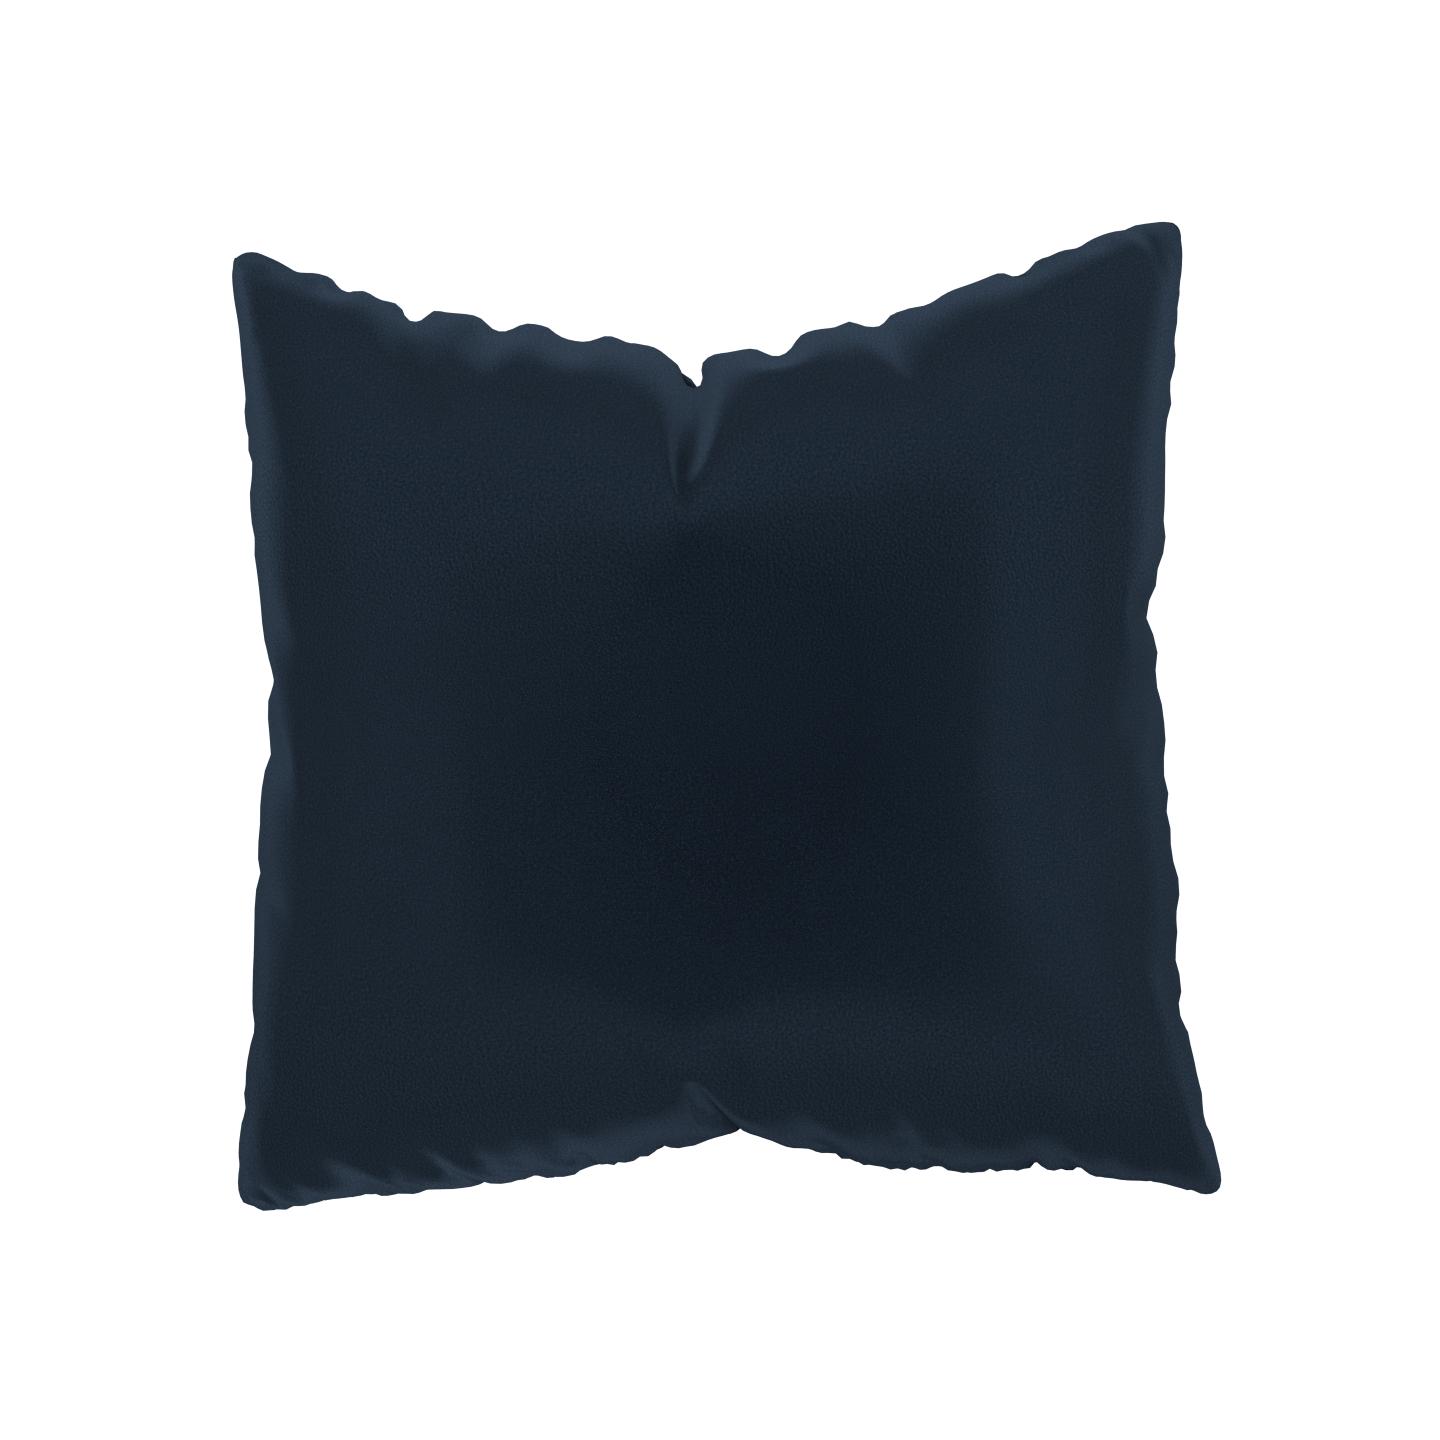 MYCS Coussin Bleu Nuit - 50x50 cm - Housse en Velours. Coussin de canapé moelleux